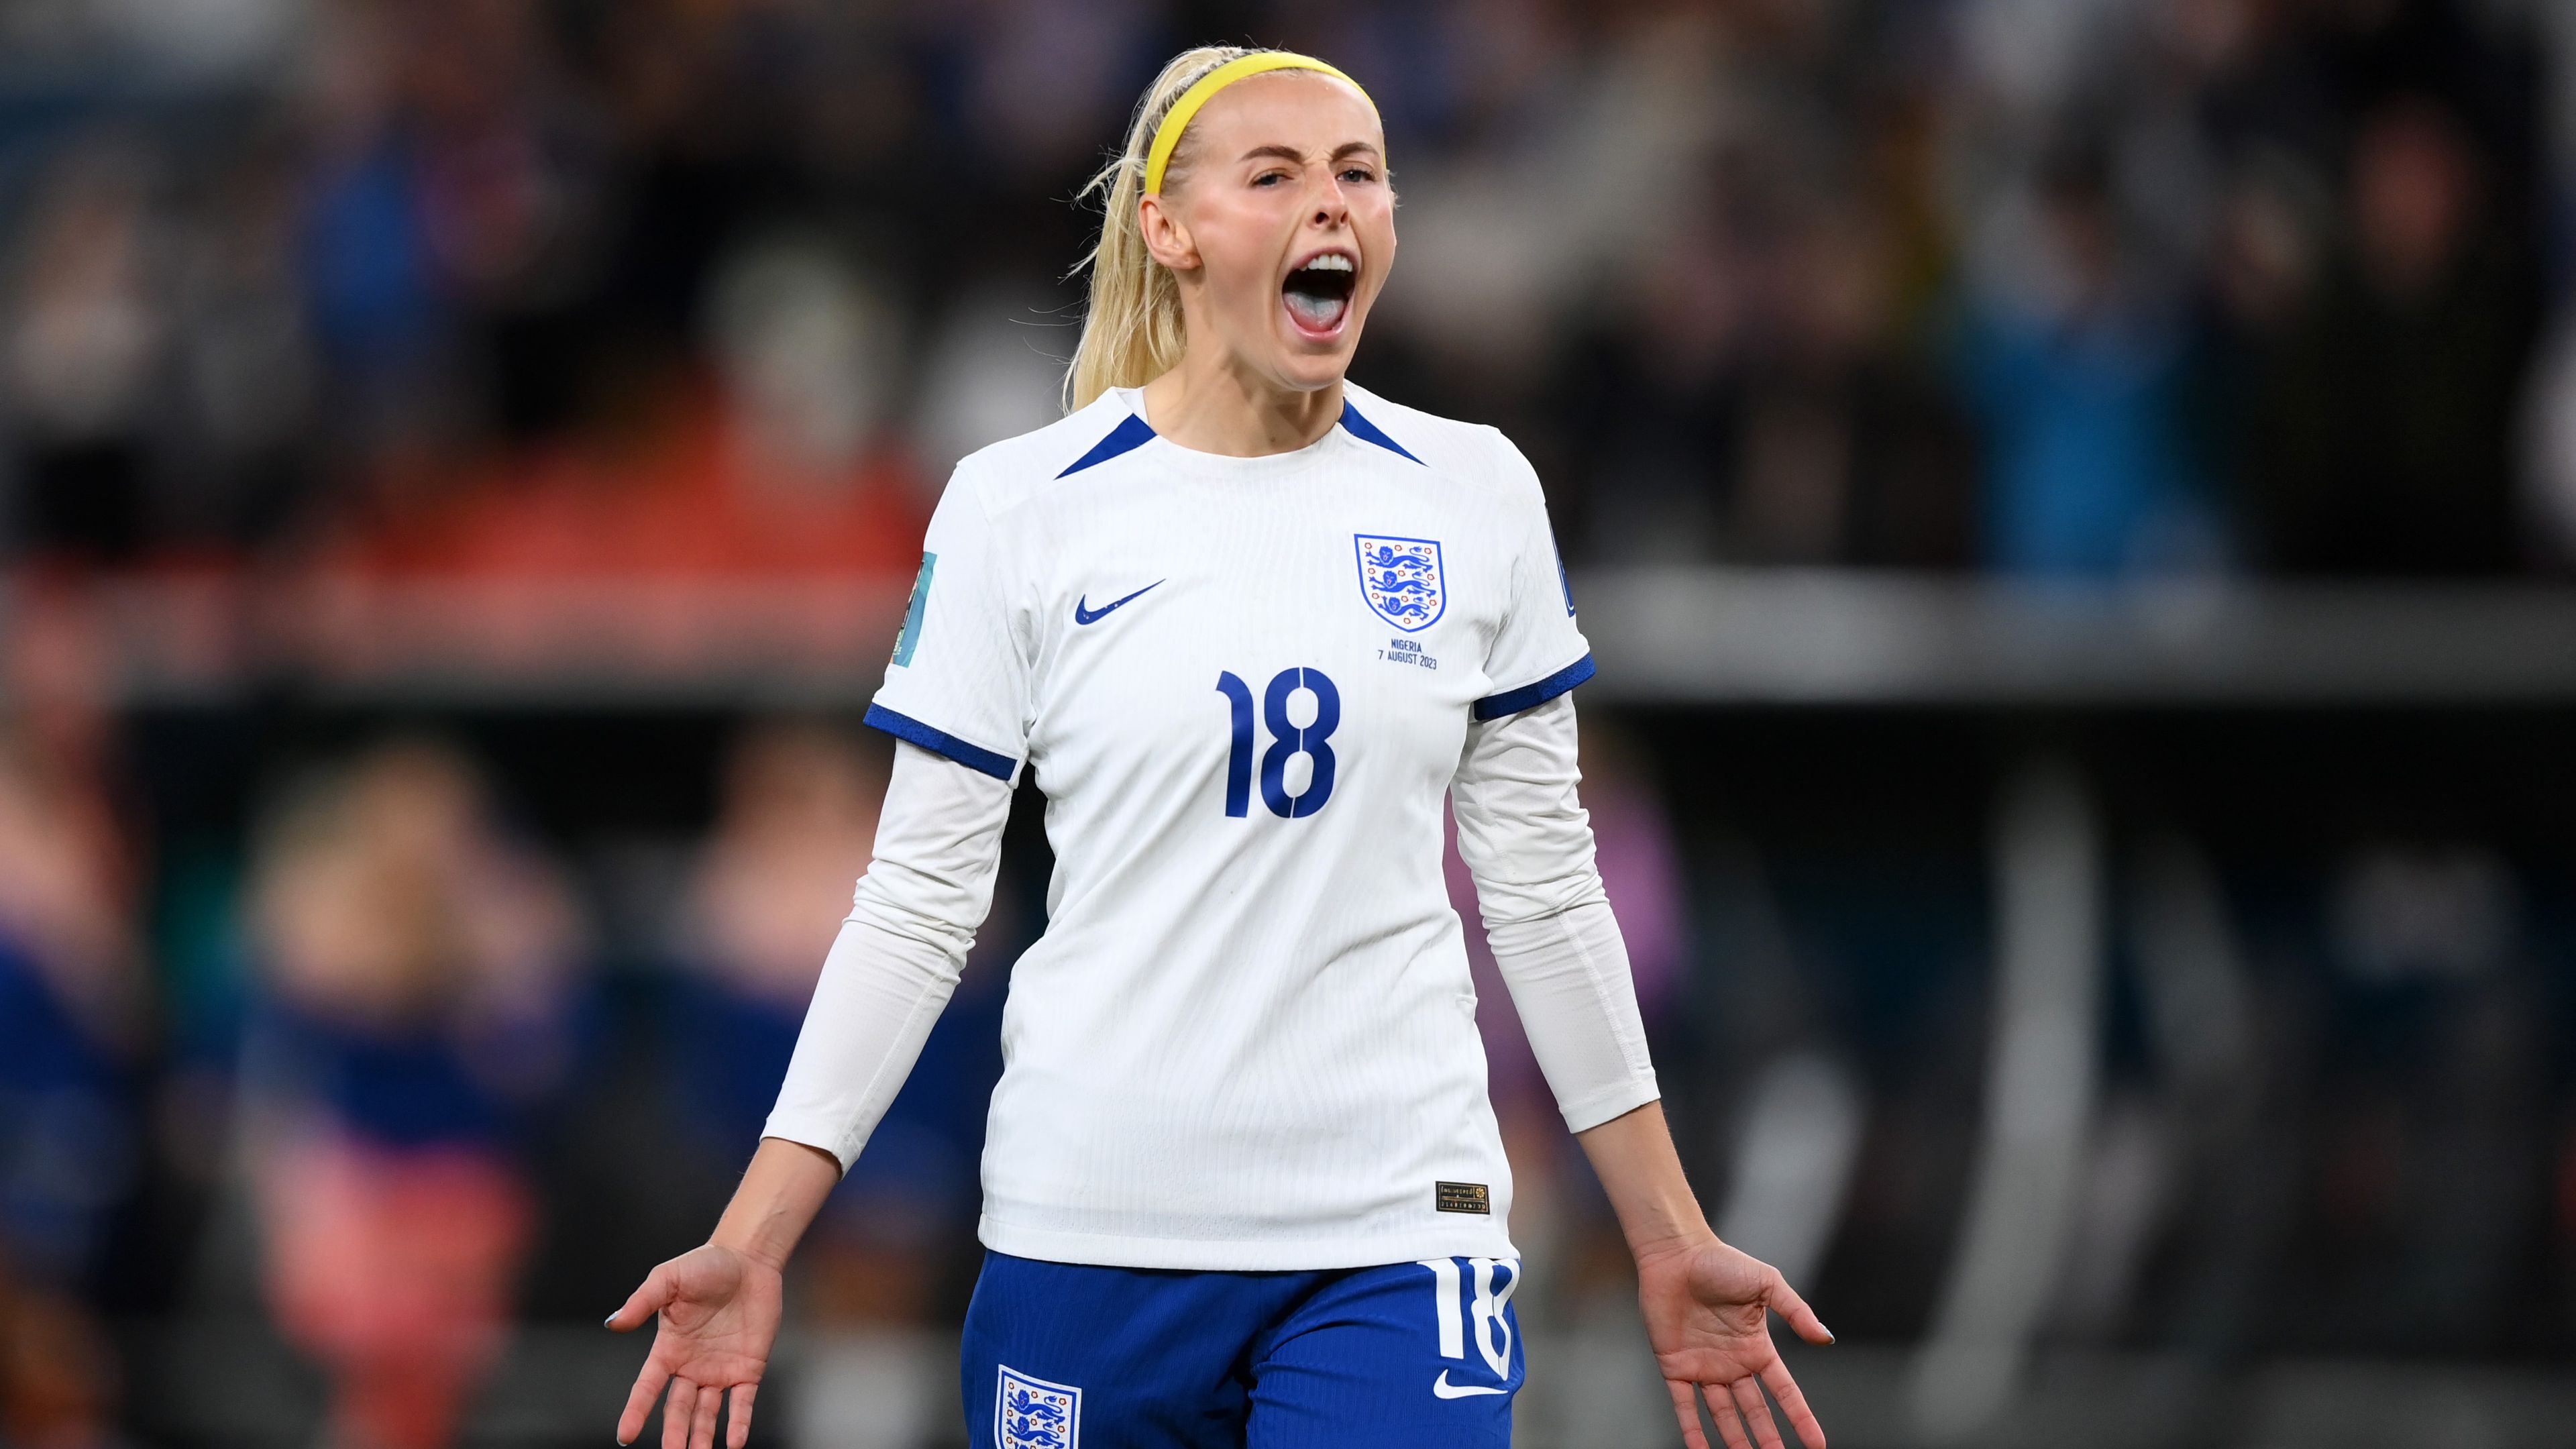 A tavalyi Eb-döntőben győztes gólt szerző Chloe Kelly zárta le a tizenegyespárbajt, továbbjutottak az angolok